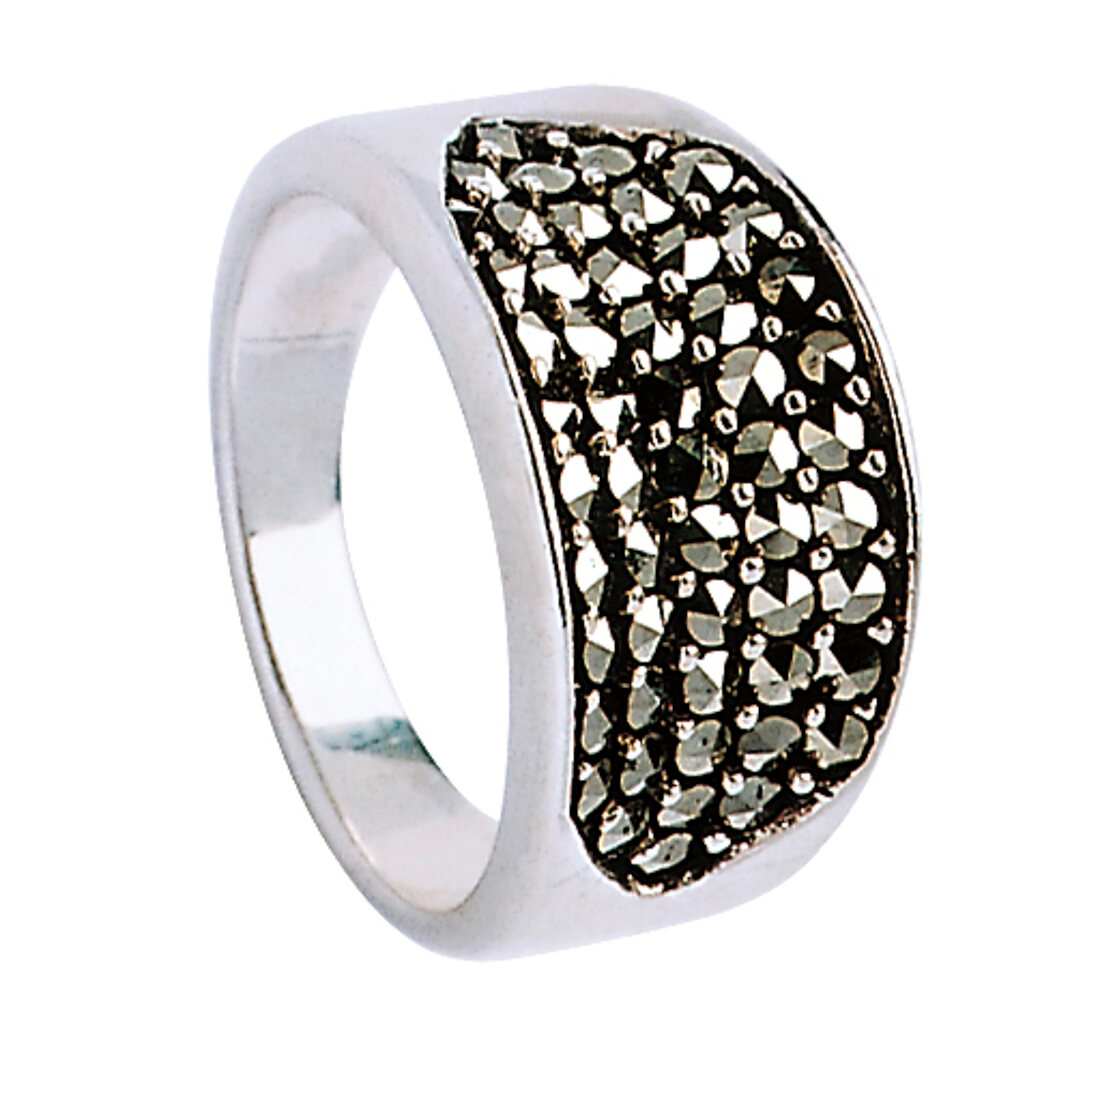 Ring mit glitzernden Steinchen auf Silber